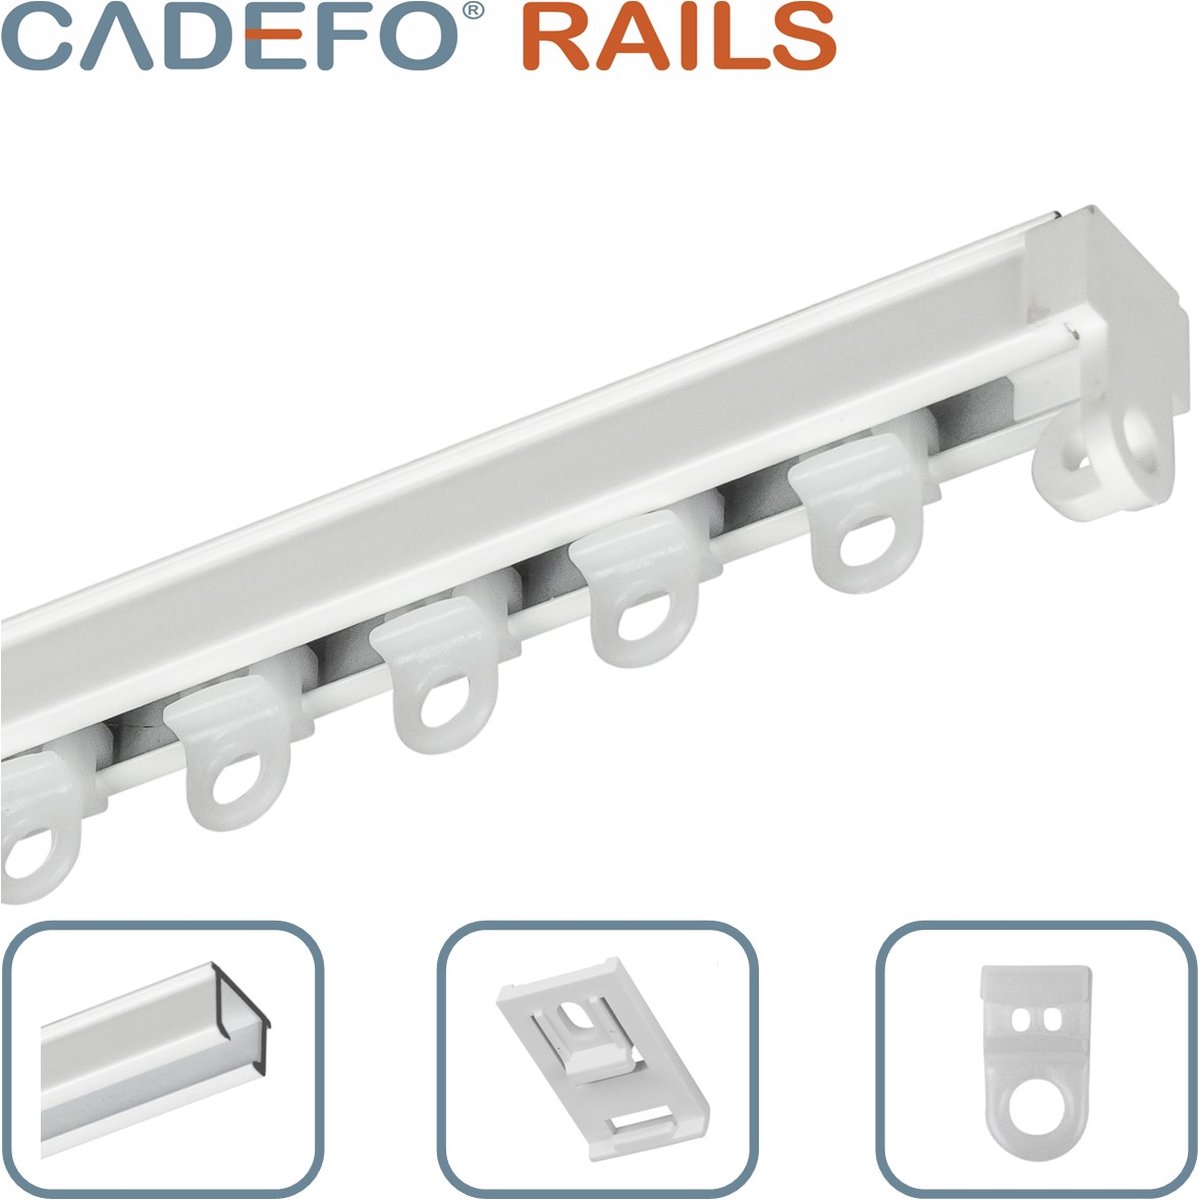 CADEFO RAILS (301 - 350 cm) Gordijnrails - Compleet op maat! - UIT 1 STUK - Leverbaar tot 6 meter - Plafondbevestiging - Lengte 316 cm